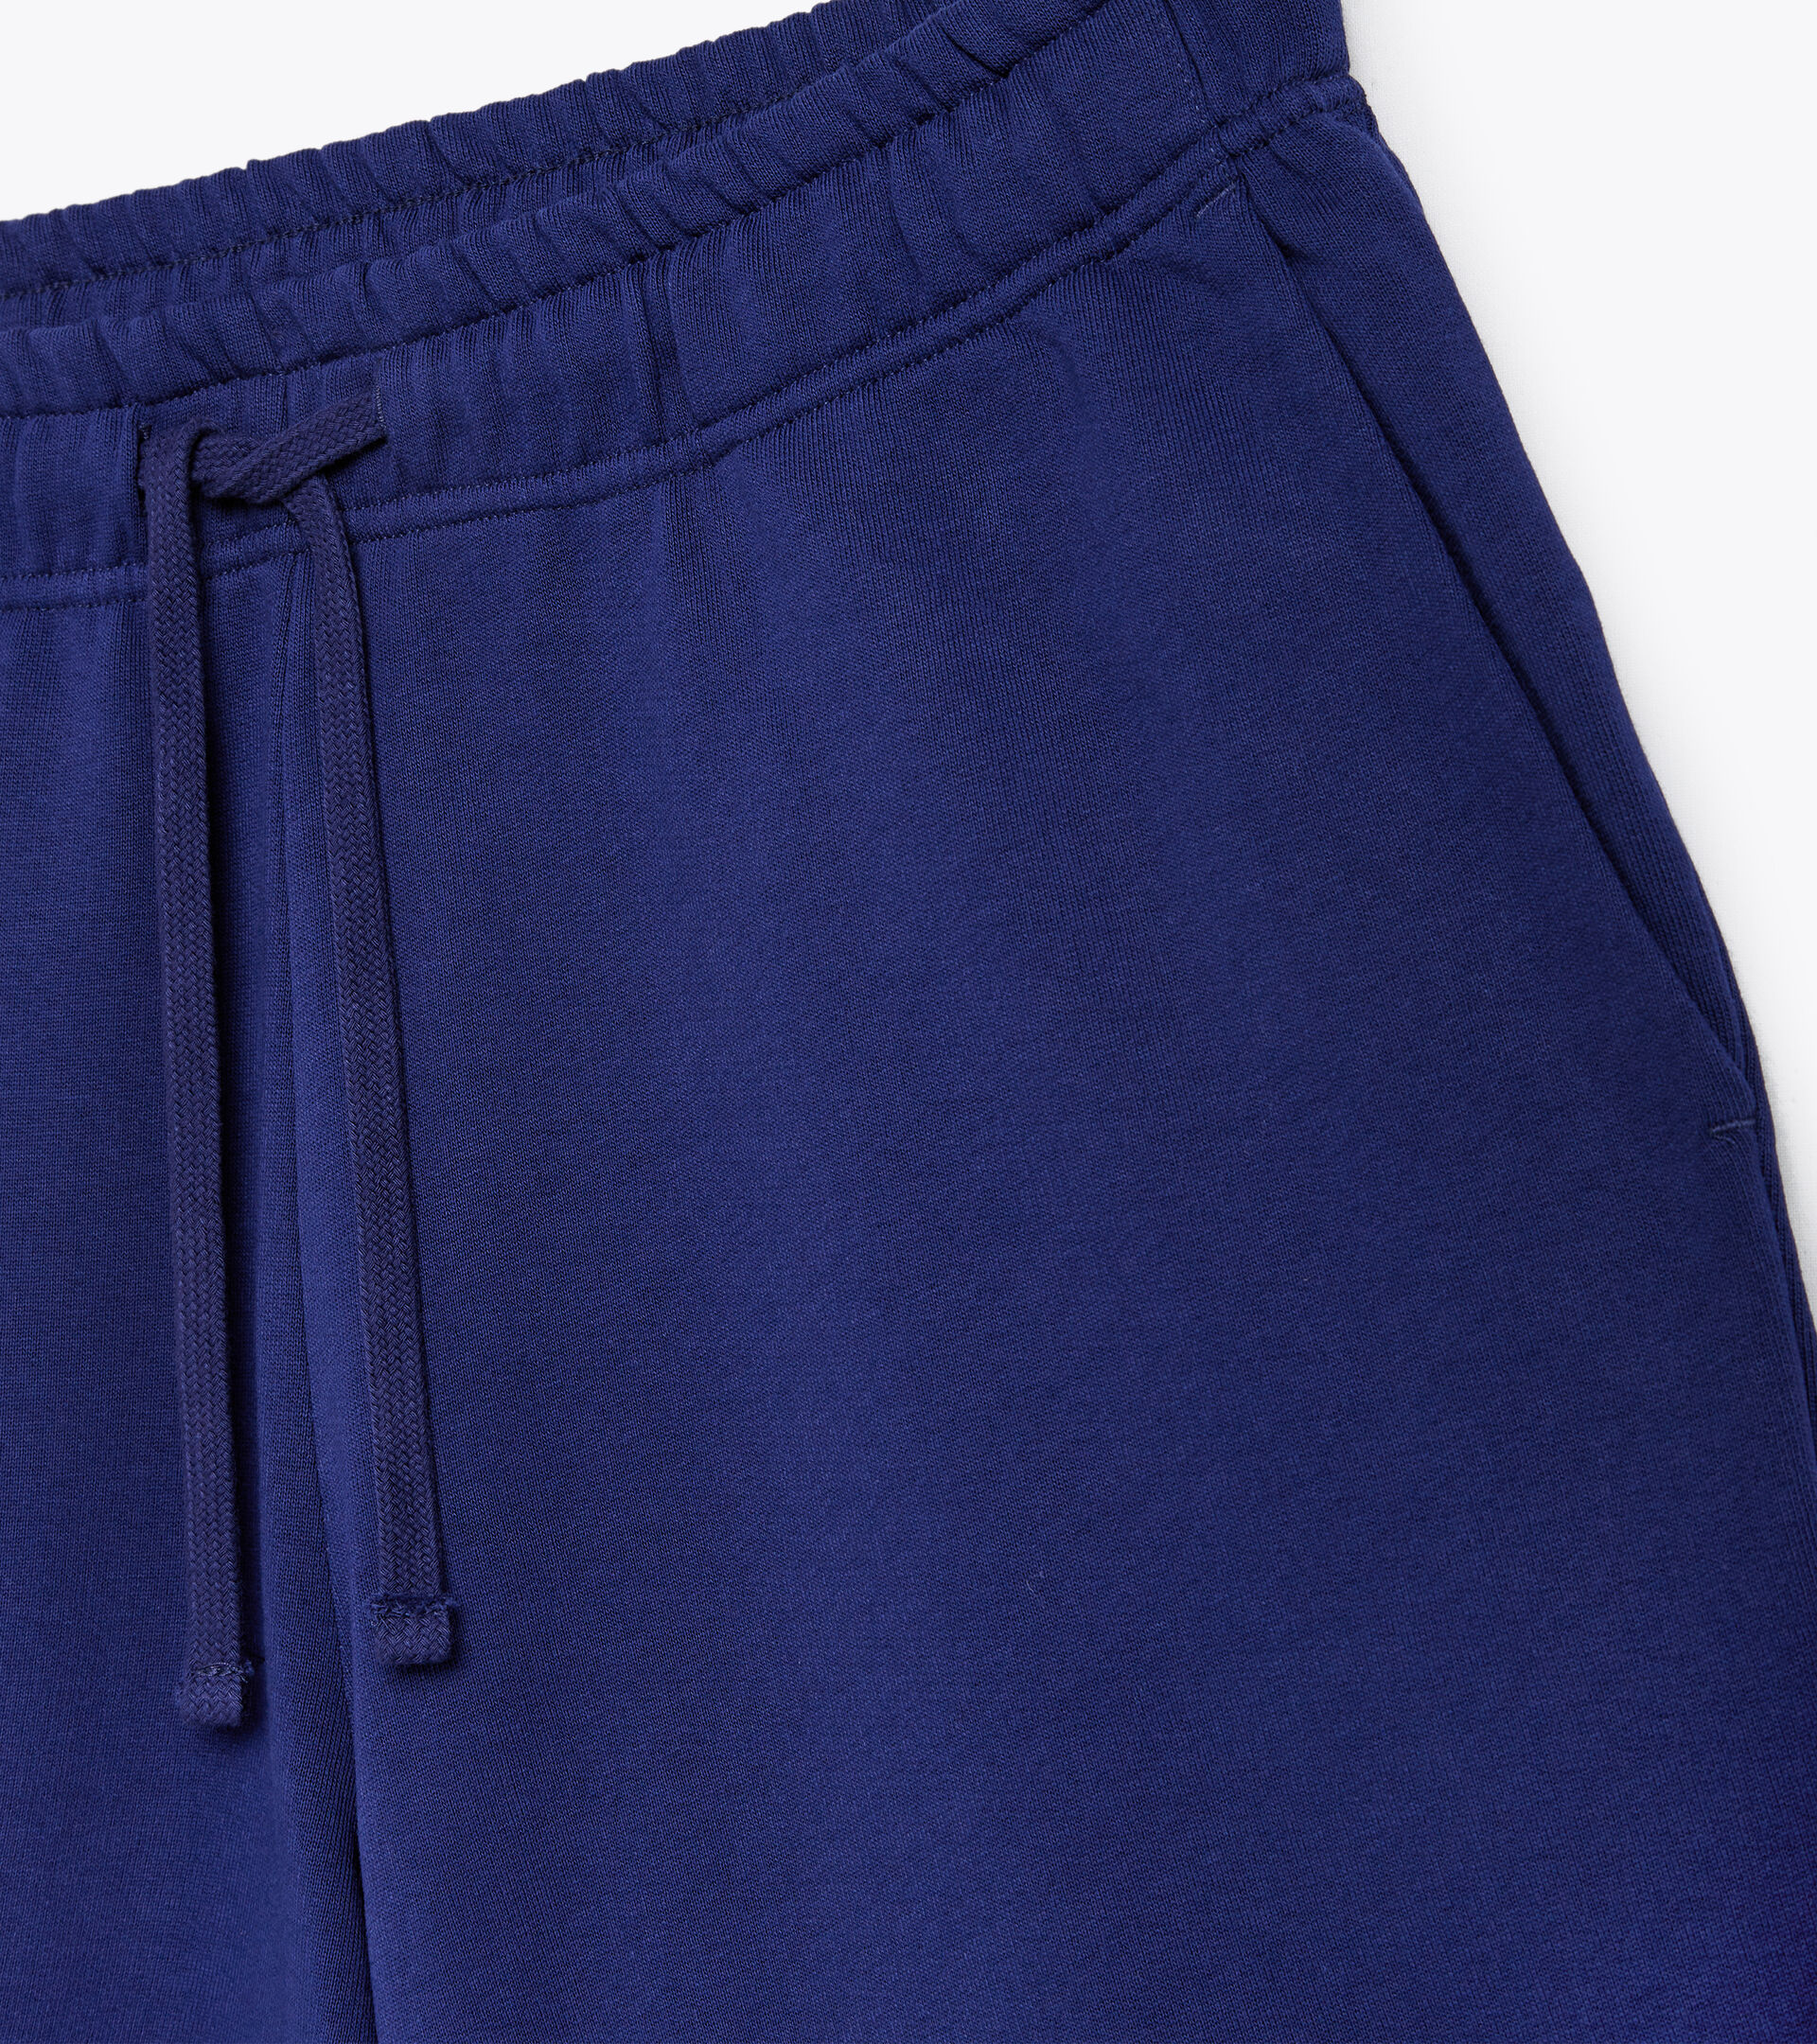 Cotton sweatpants - Gender neutral BERMUDA SPW LOGO BLUE PRINT - Diadora